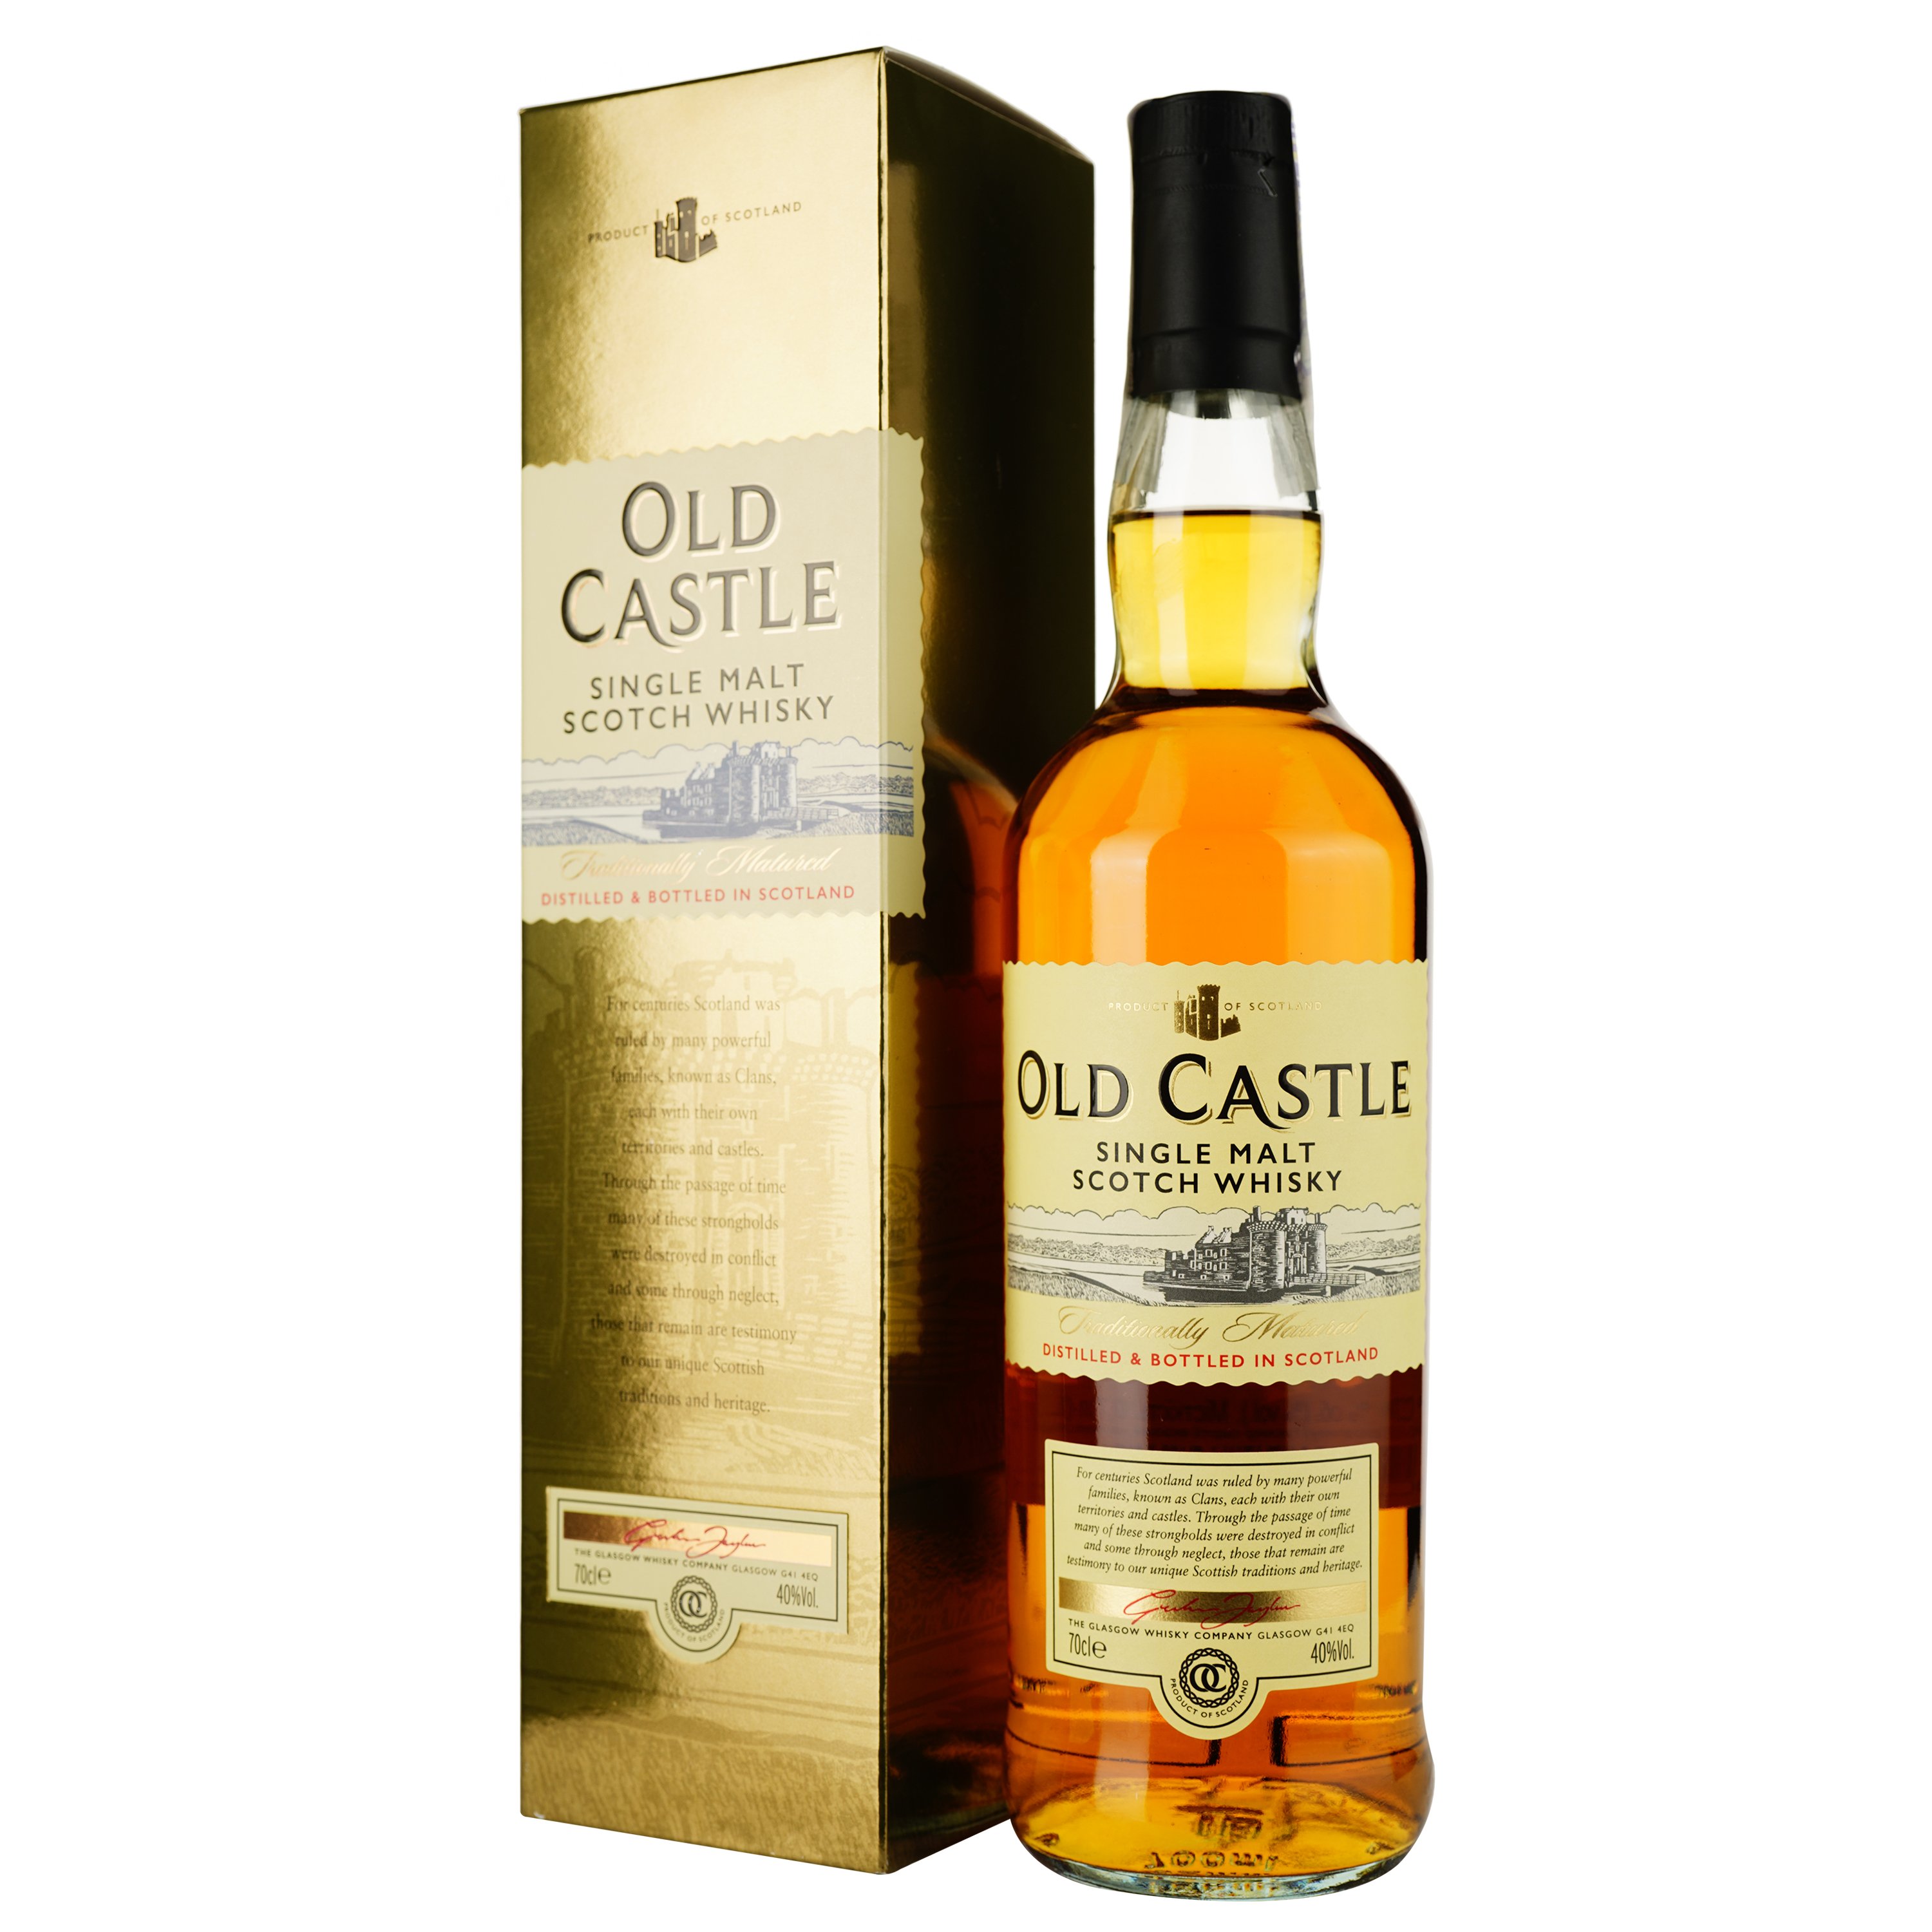 Віскі Old Castle Single Malt Scotch Whisky, в подарунковій упаковці, 40%, 0,7 л (847726) - фото 1